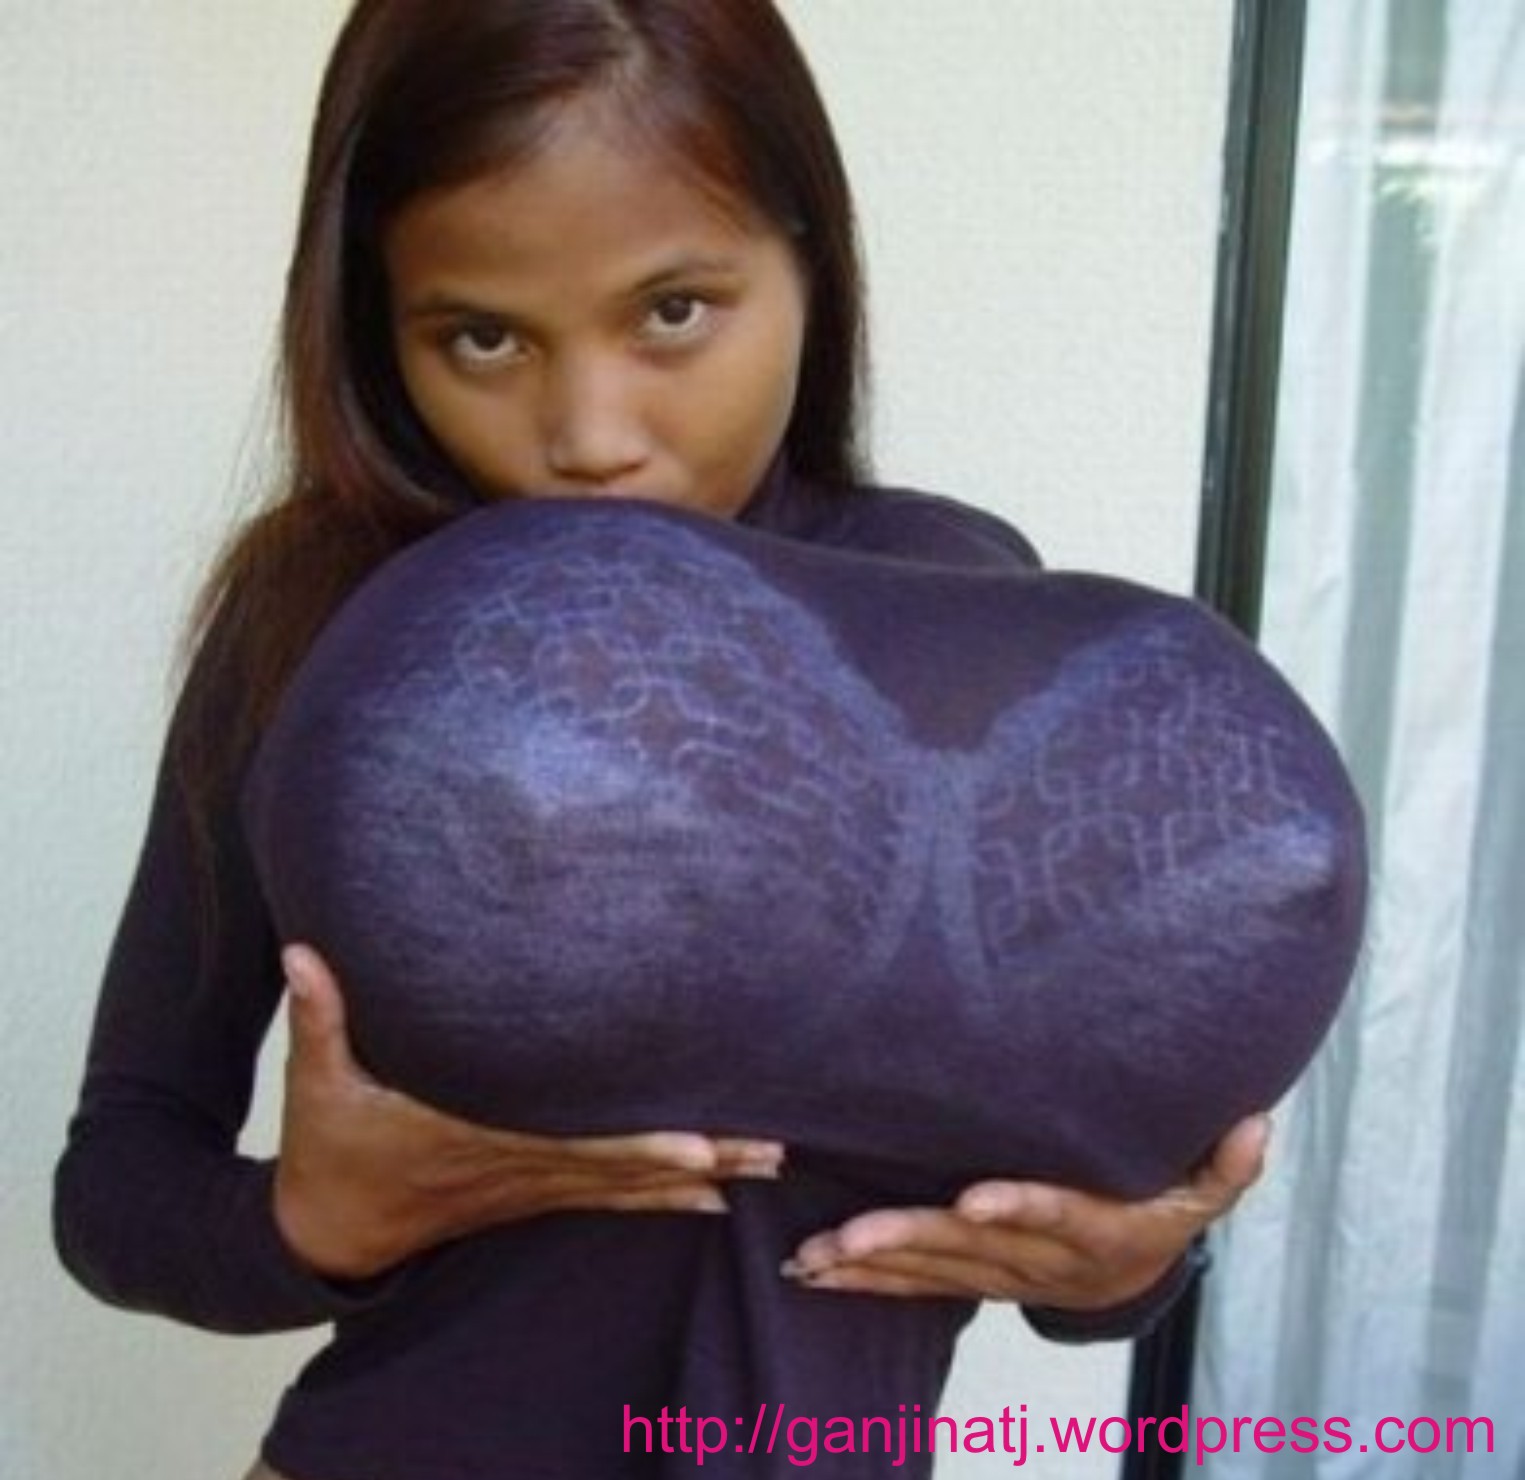 девушку с самой огромной грудью в мире фото 71